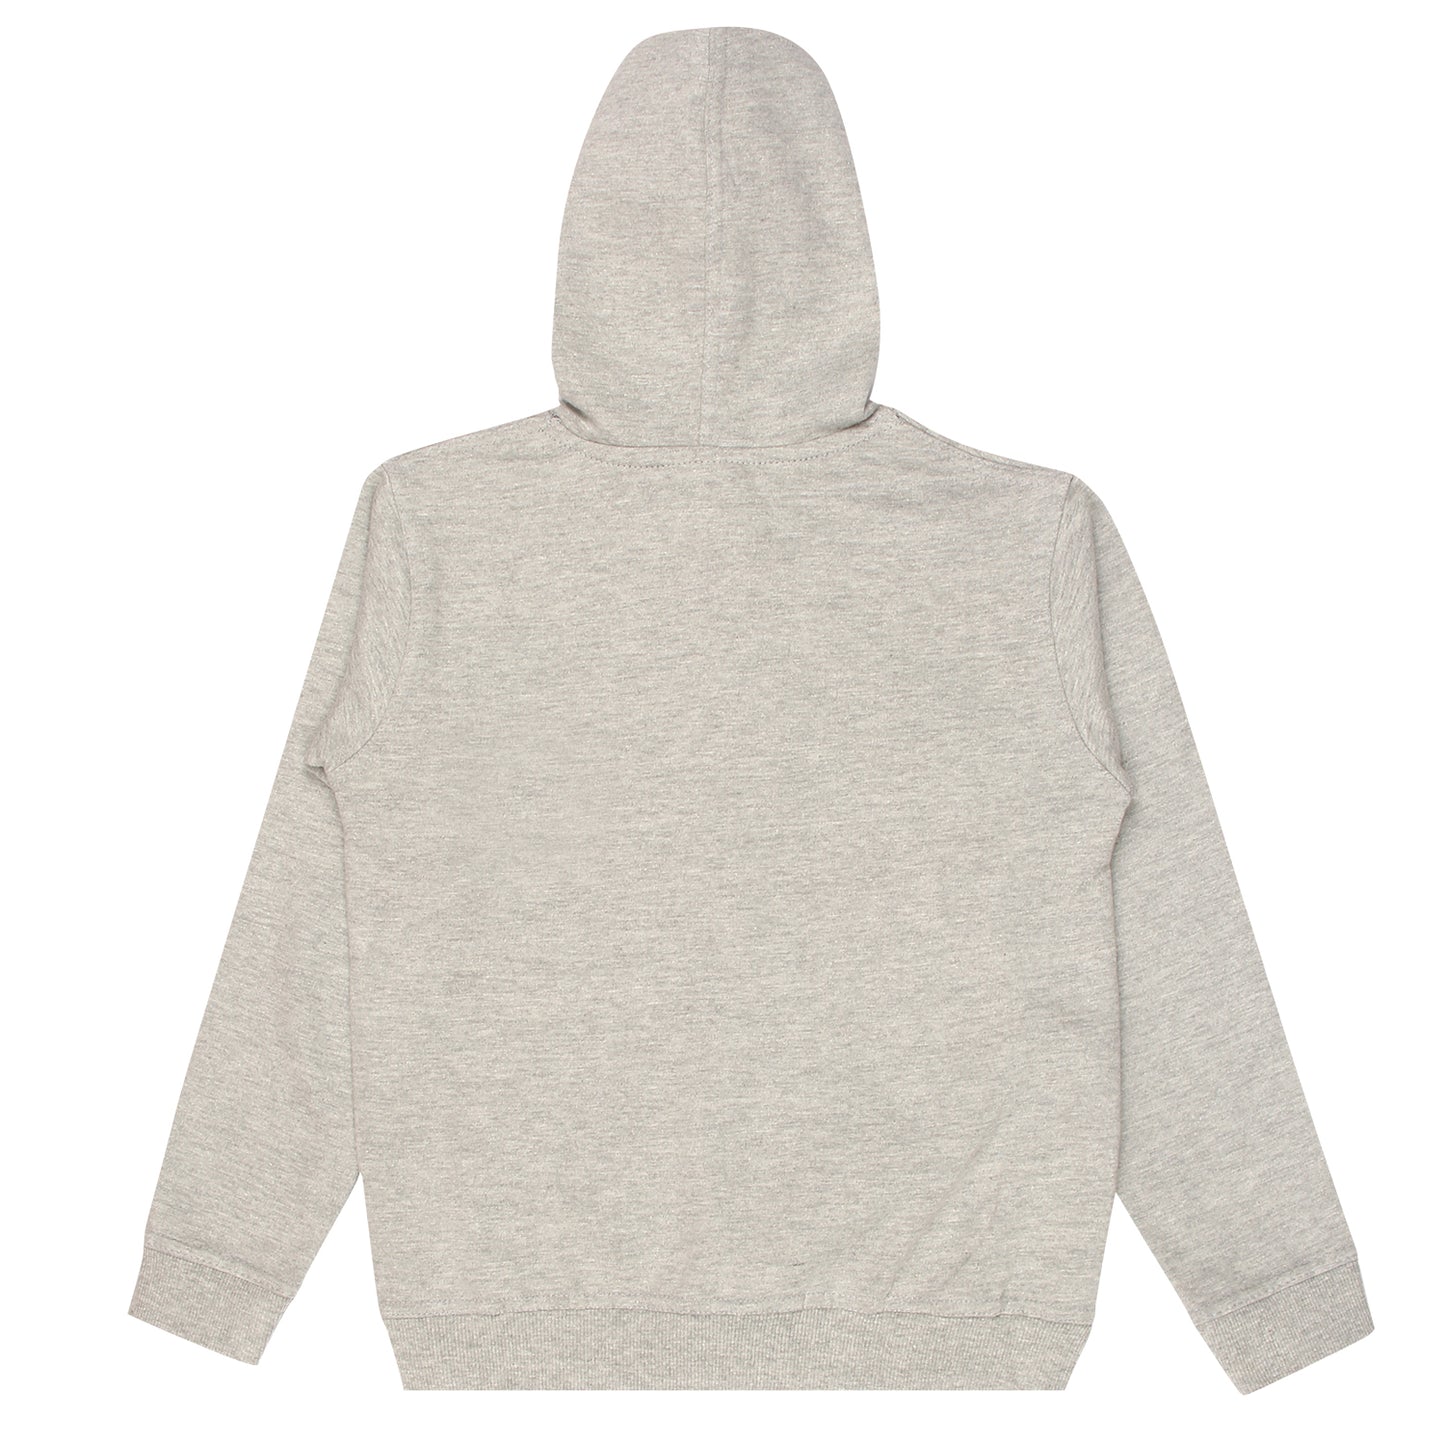 Boys and Girls Printed Grey Melange Color Sweatshirt Hoodies